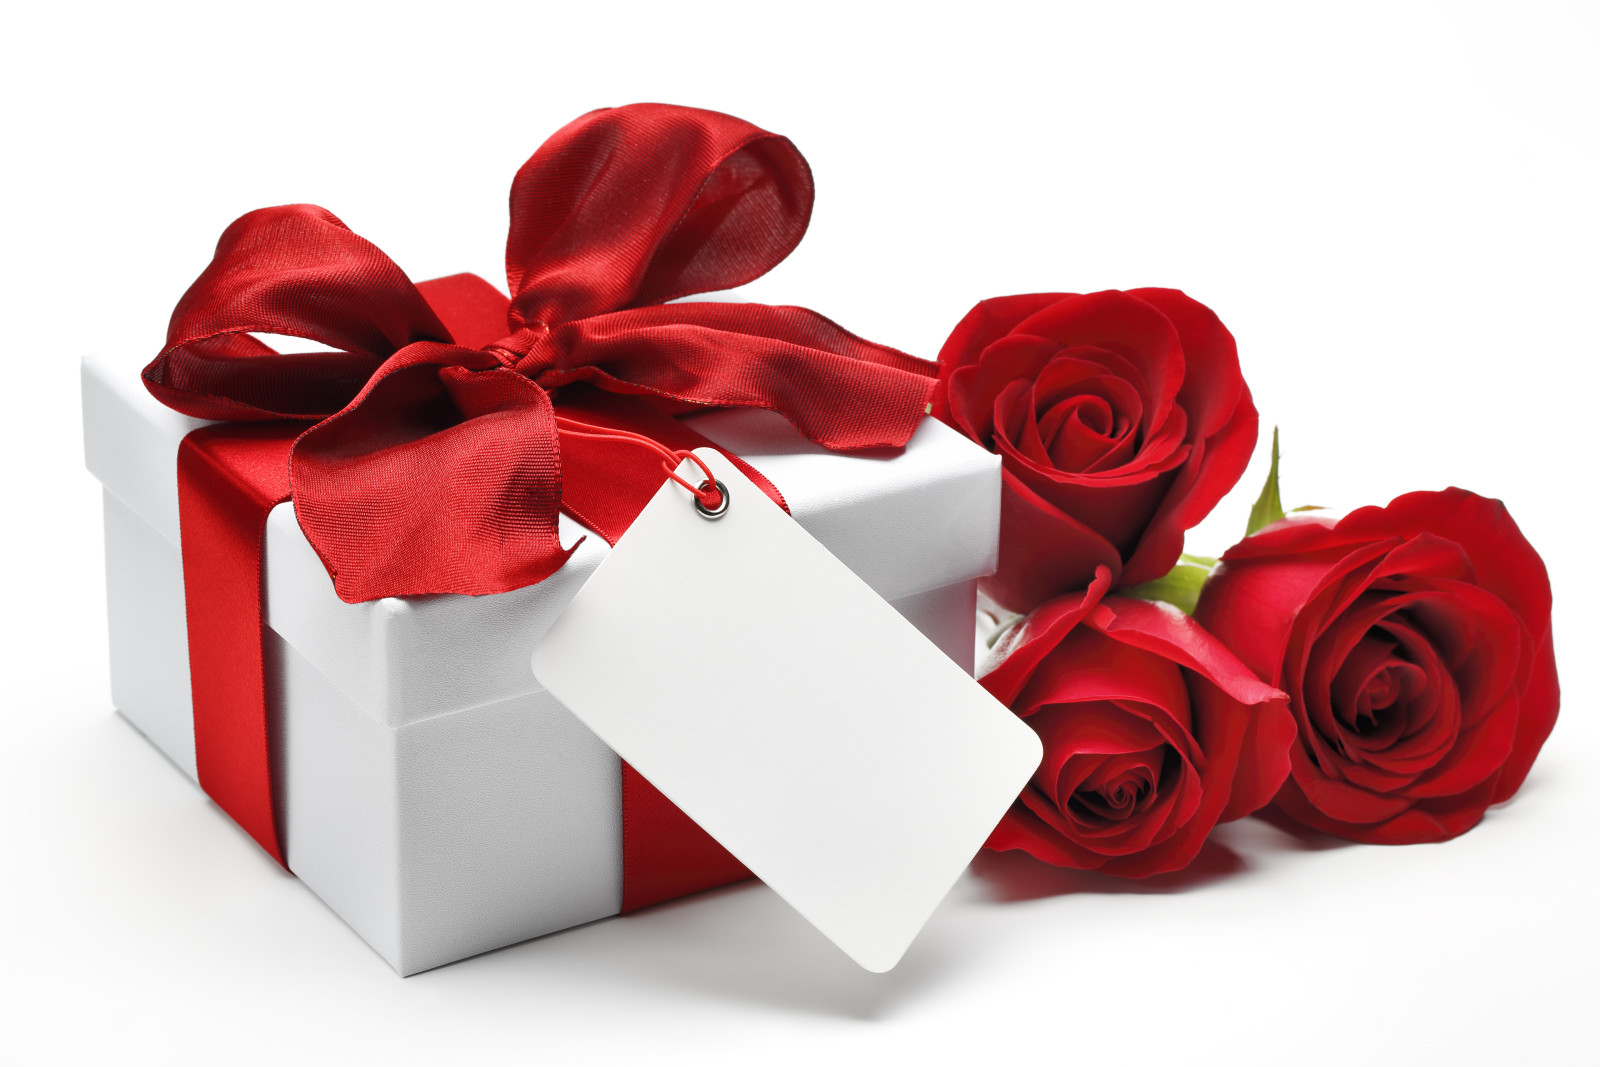 yêu và quý, lãng mạn, ngày lễ tình nhân, quà tặng, hoa hồng, tim